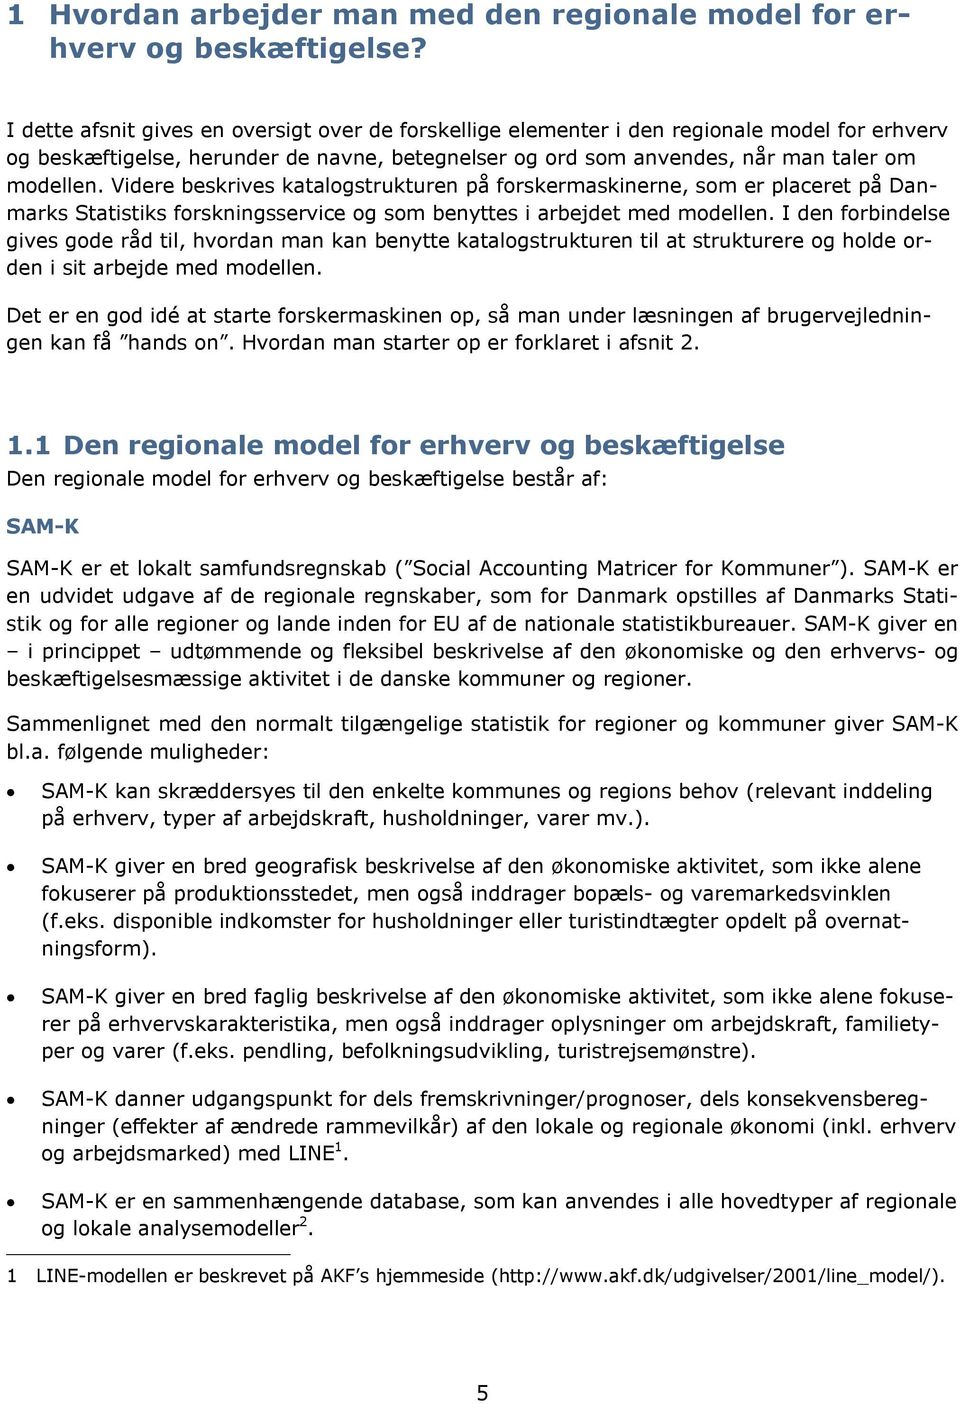 Videre beskrives katalogstrukturen på forskermaskinerne, som er placeret på Danmarks Statistiks forskningsservice og som benyttes i arbejdet med modellen.